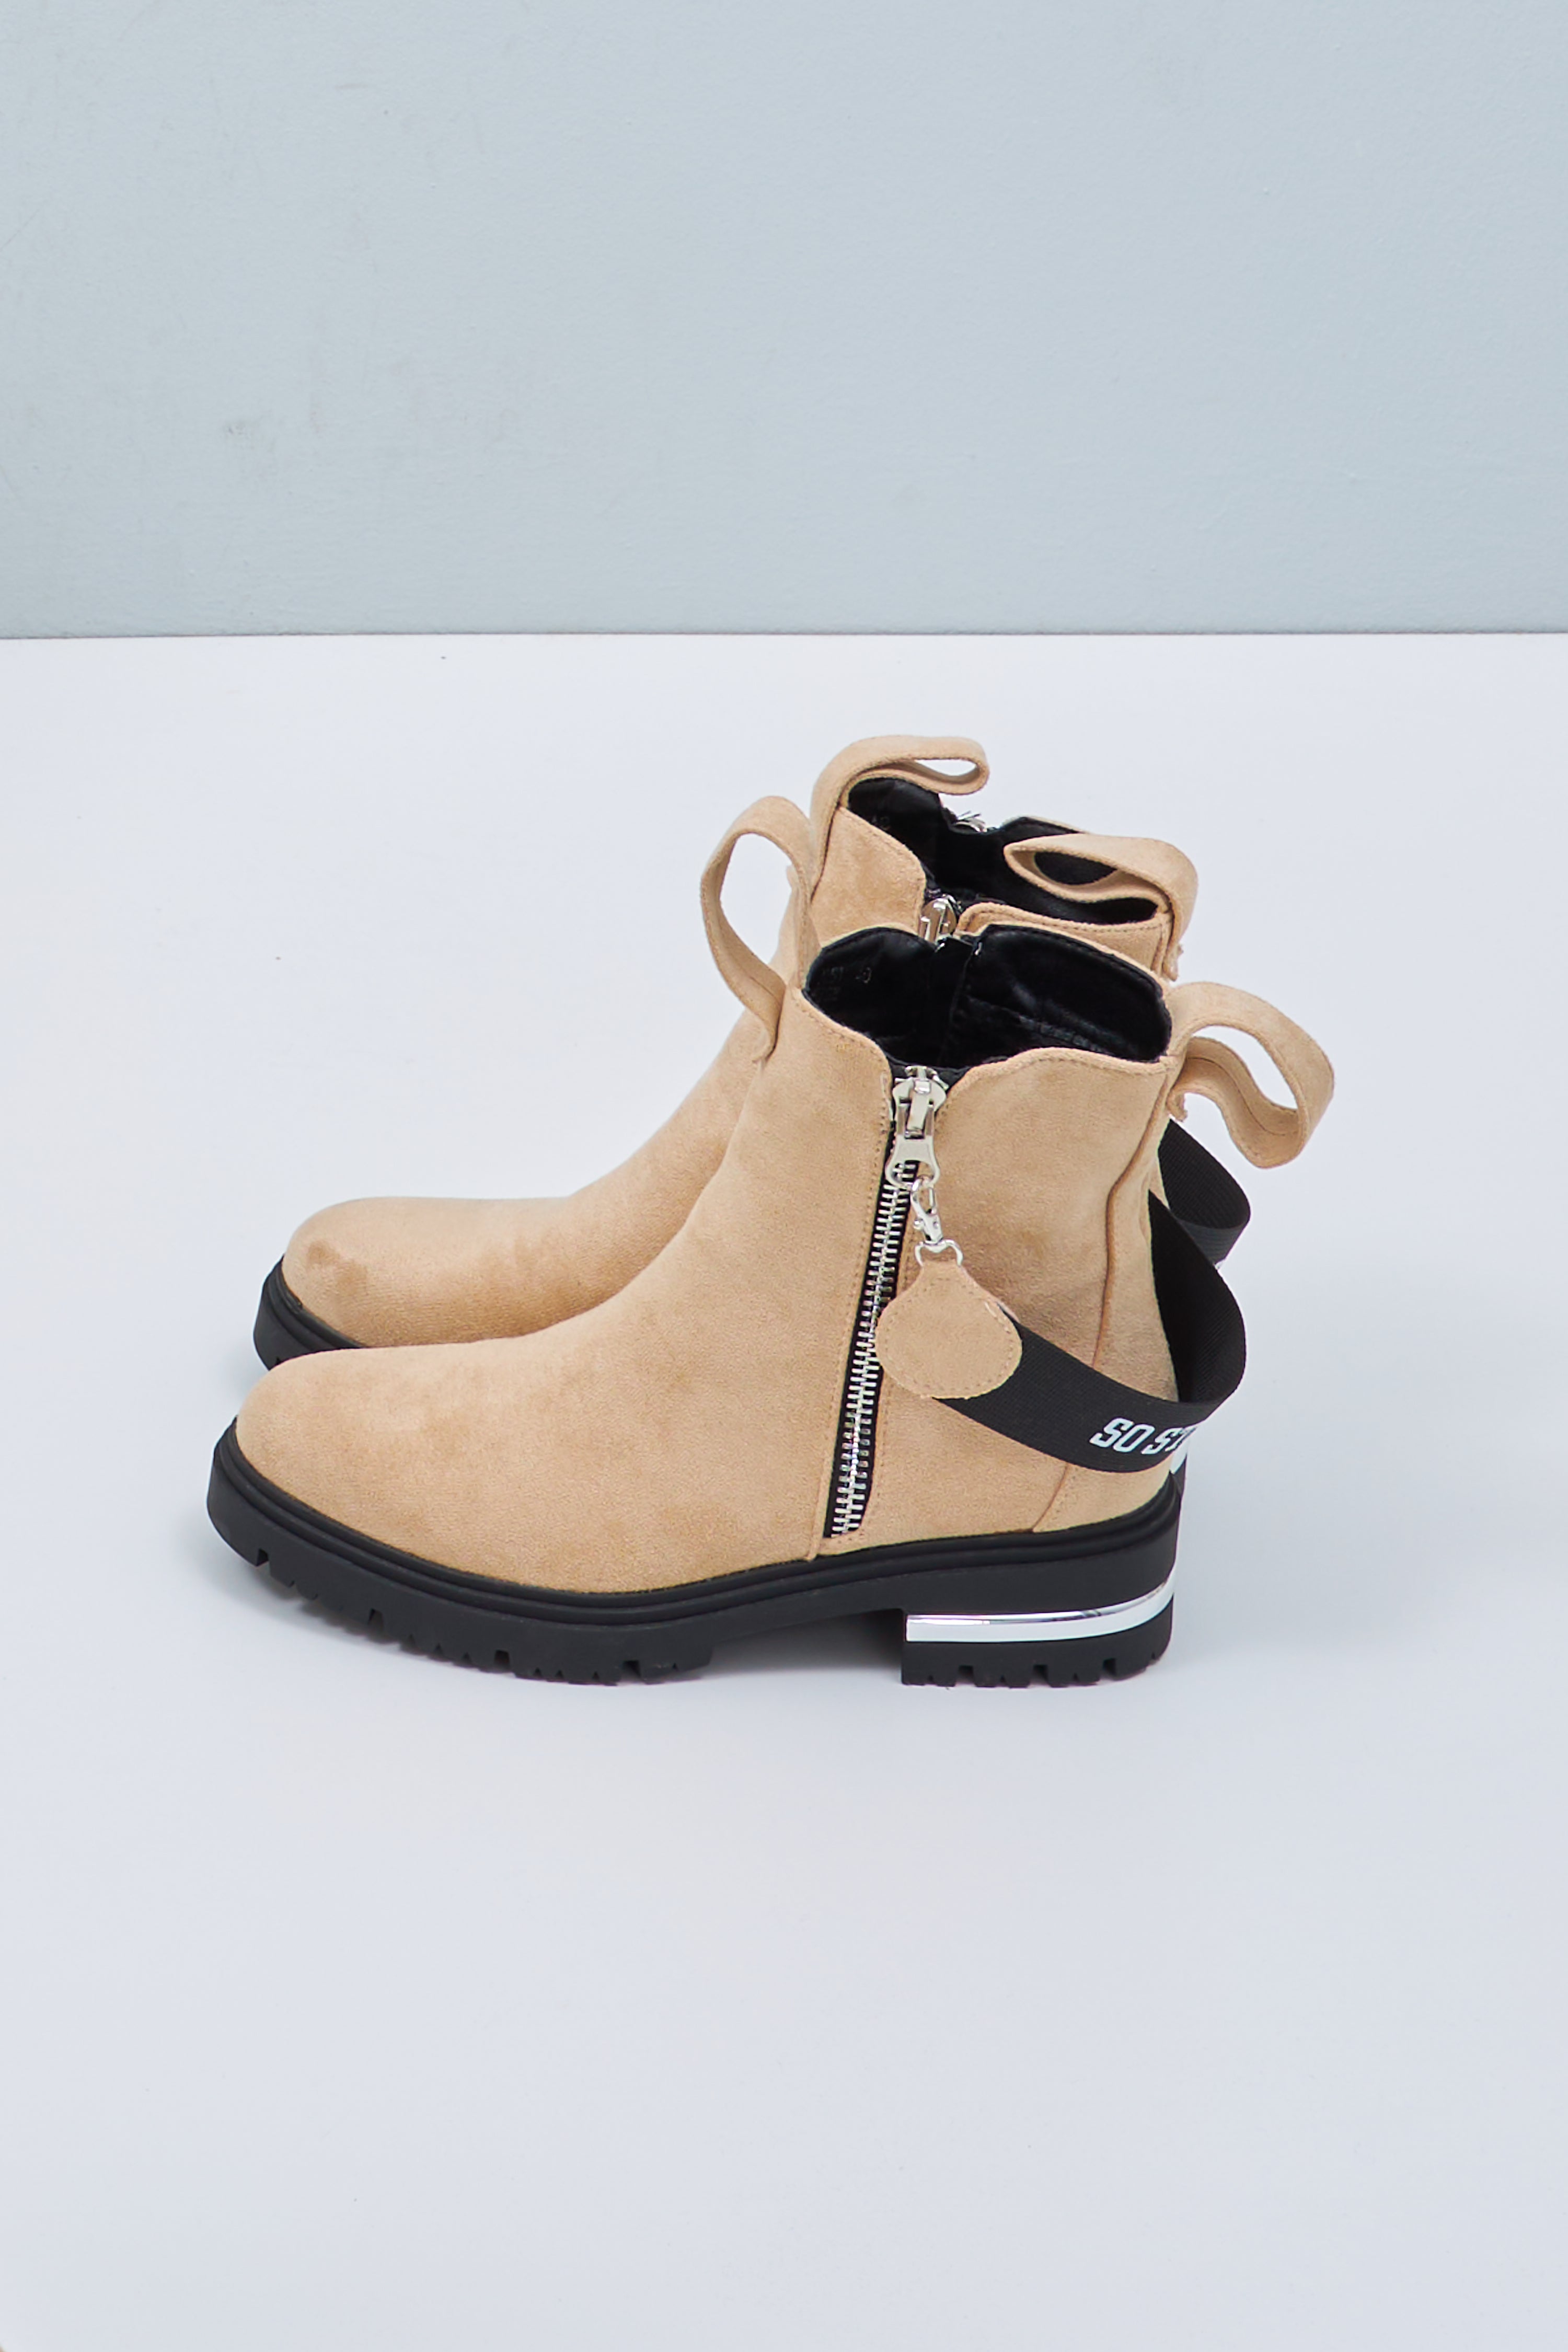 Damen Schuhe Boots beige Trends & Lifestyle Deutschland GmbH